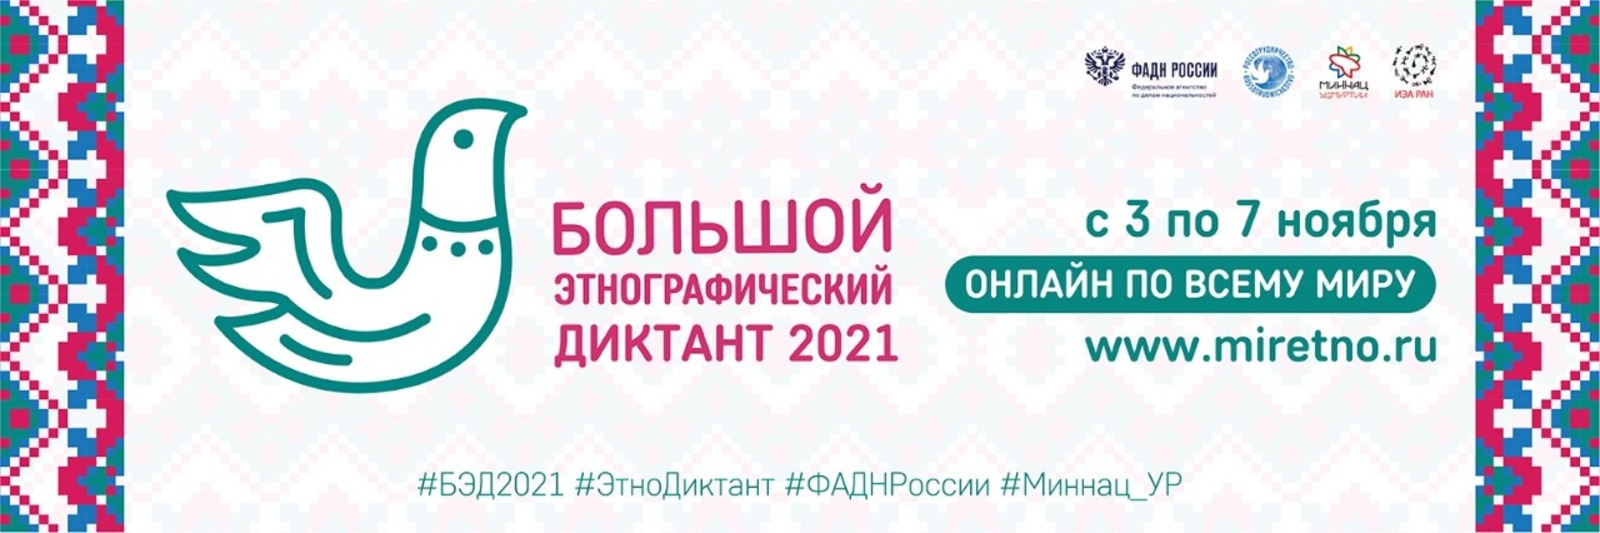 Республика Башкортостан присоединяется к Большому этнографическому диктанту